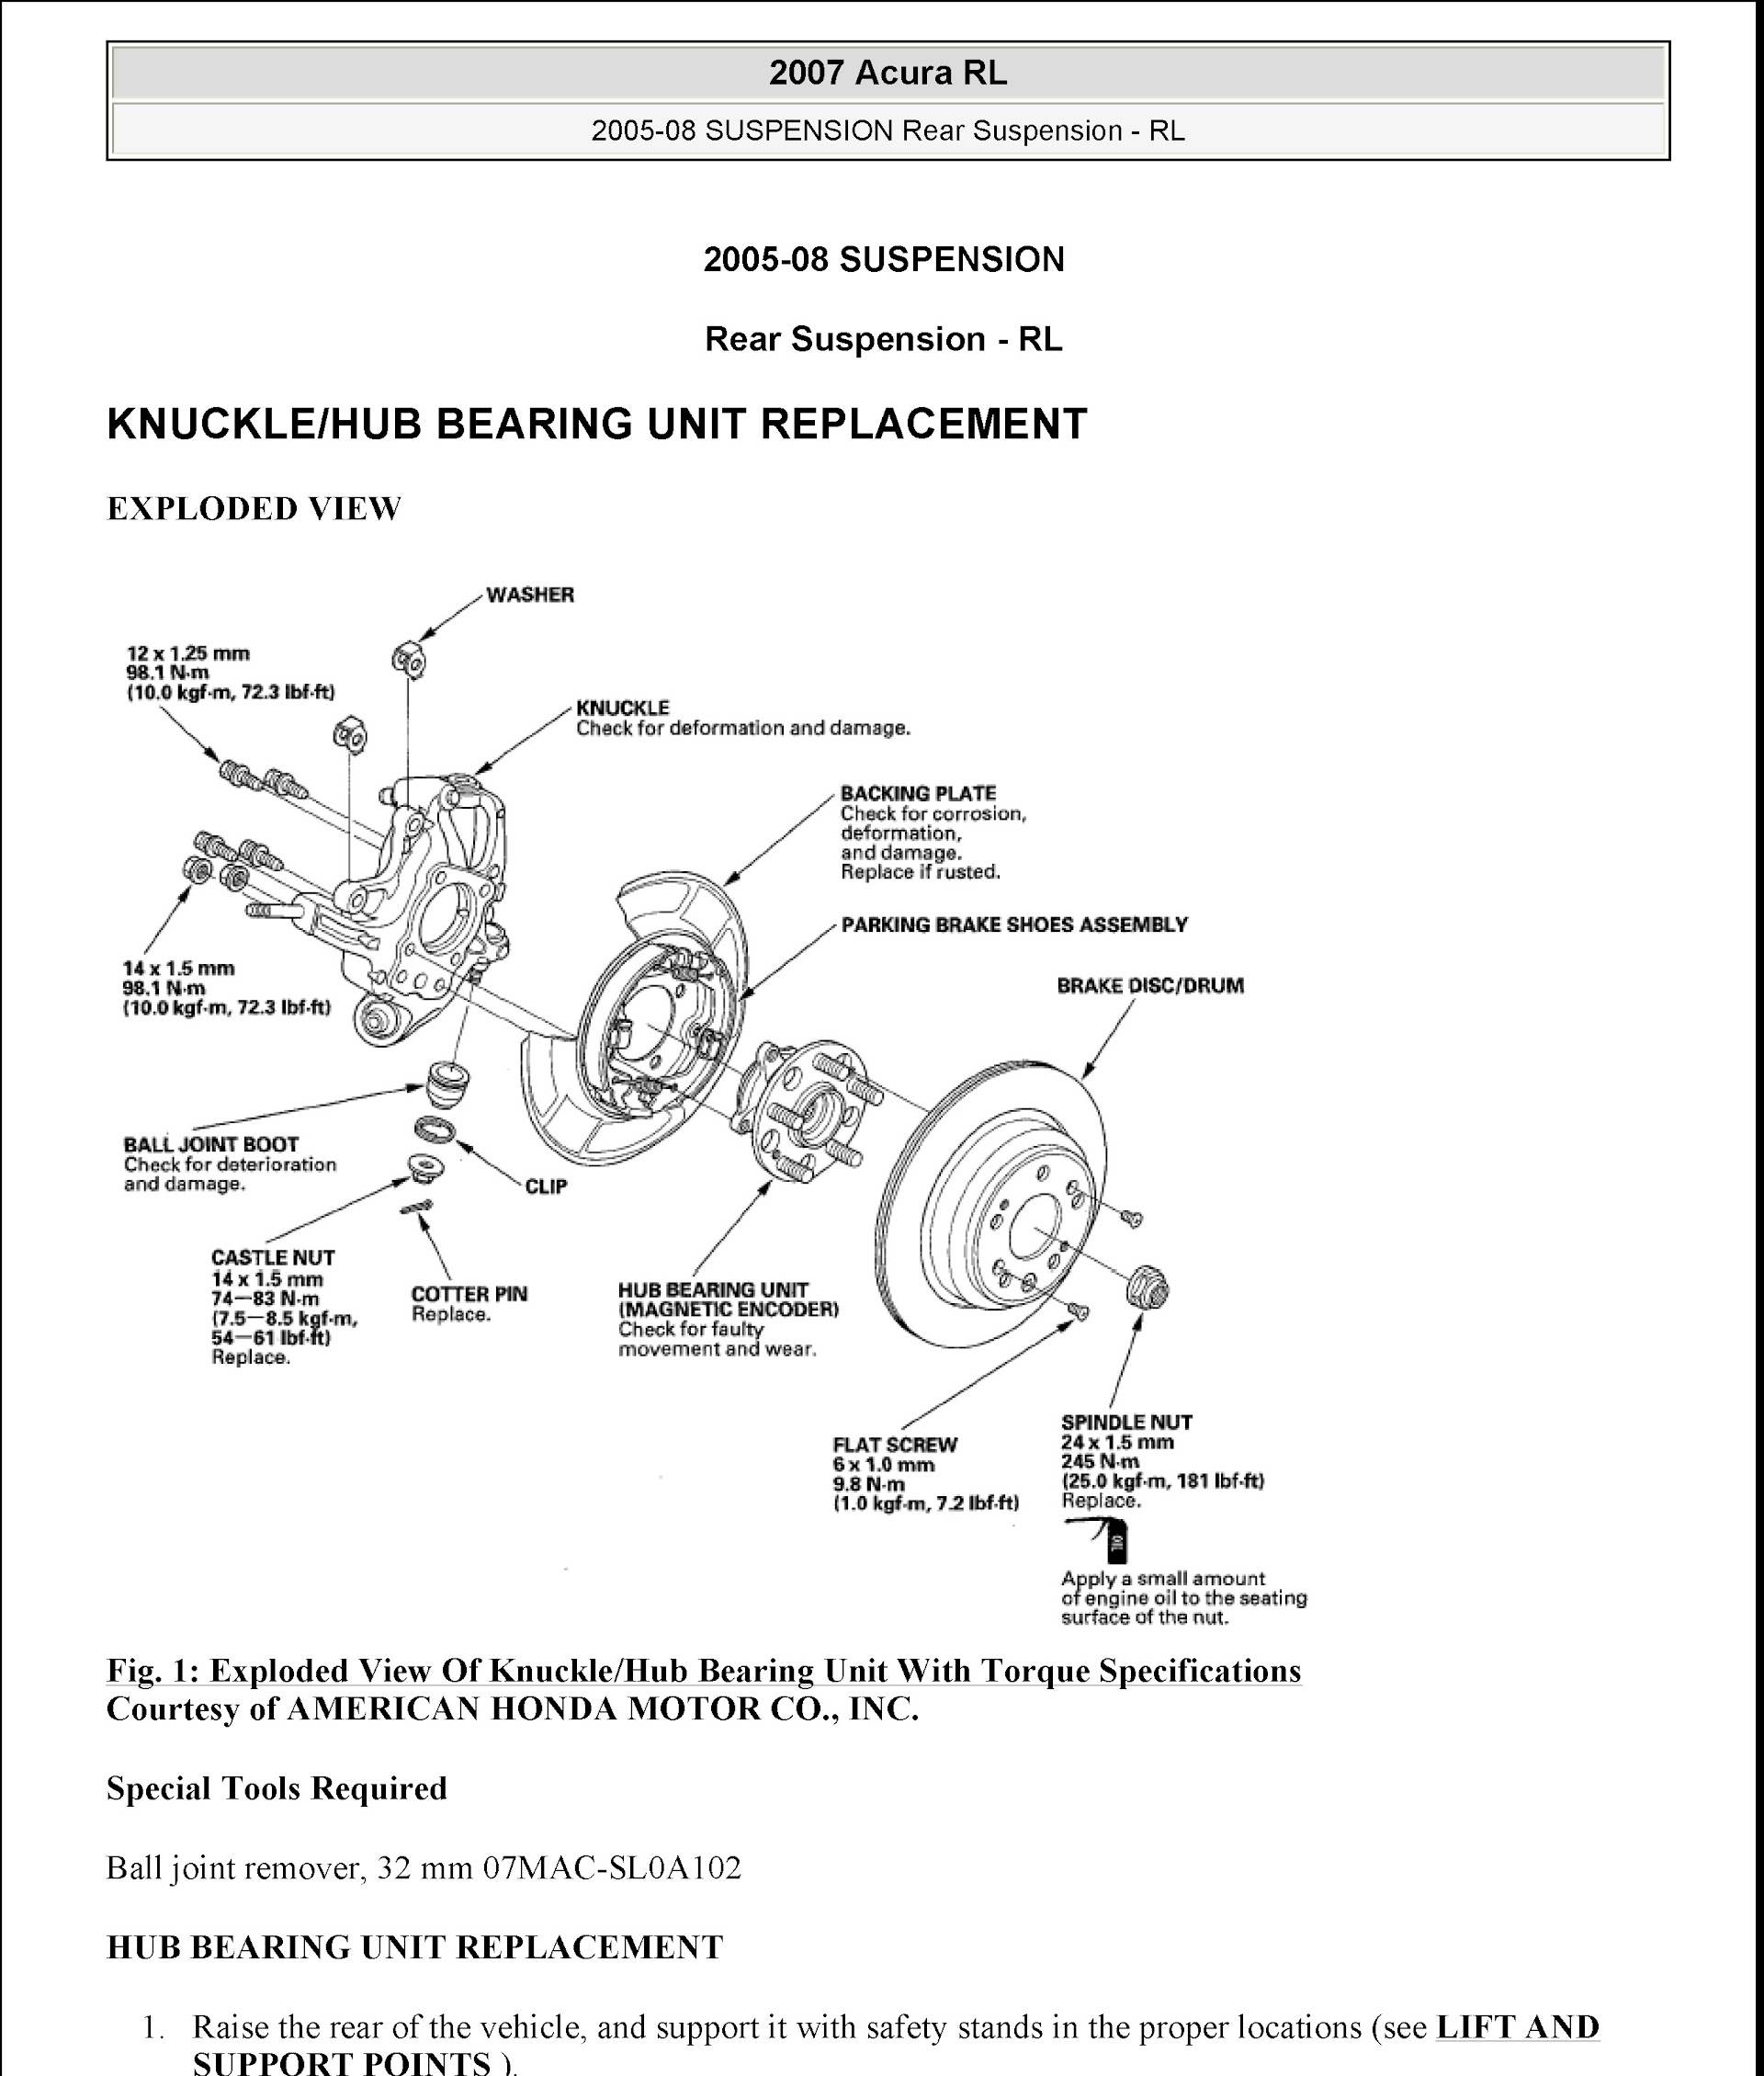 2008 Acura RL Repair Manual, Rear Suspension